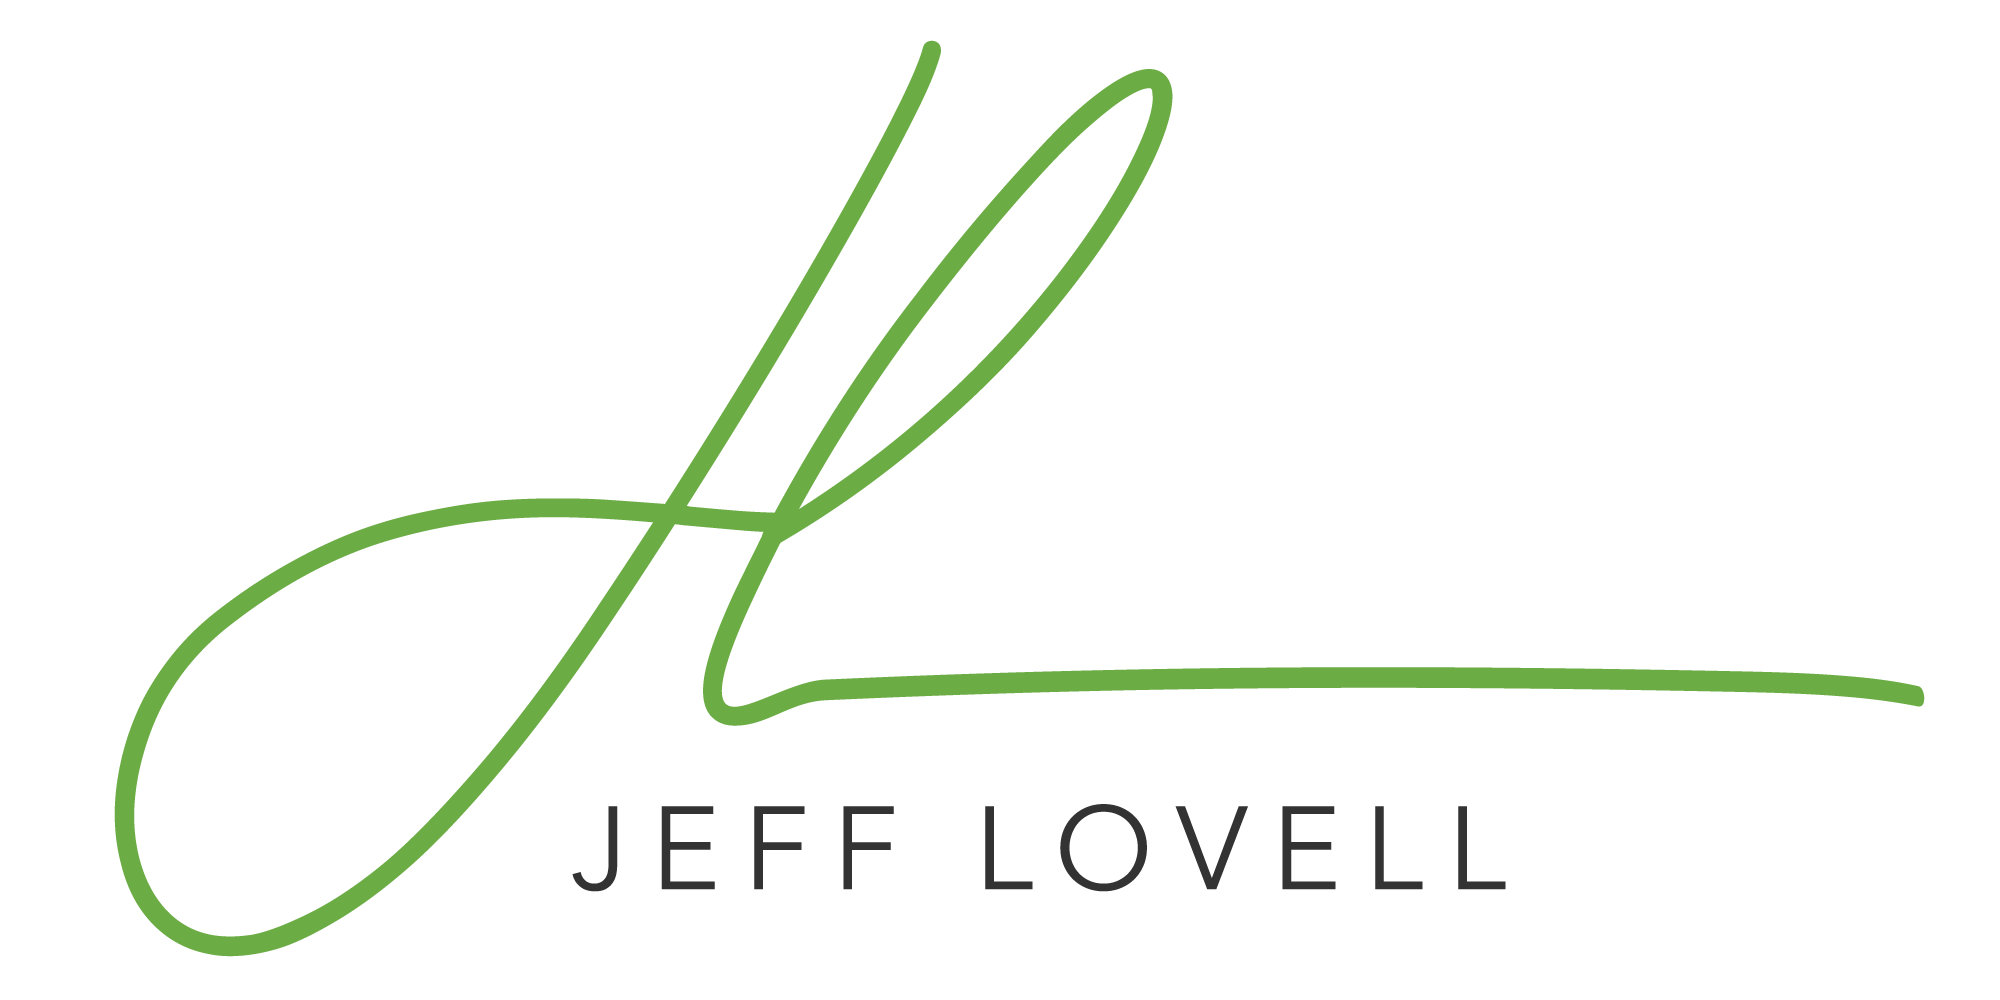 Jeff Lovell